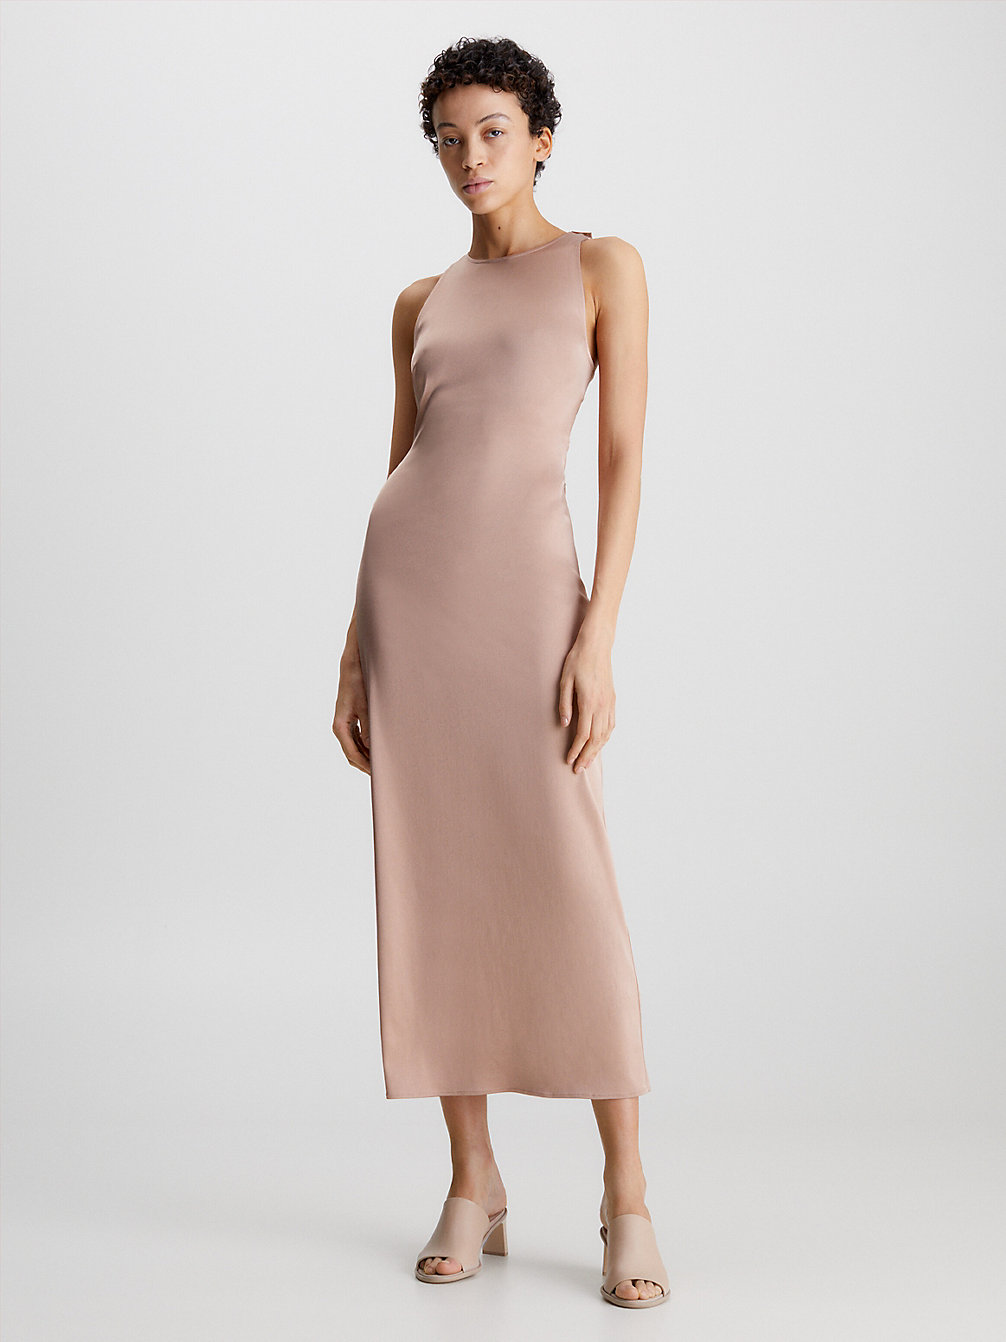 ROEBUCK Robe Longueur Midi Slim Au Design Croisé Dans Le Dos undefined femmes Calvin Klein